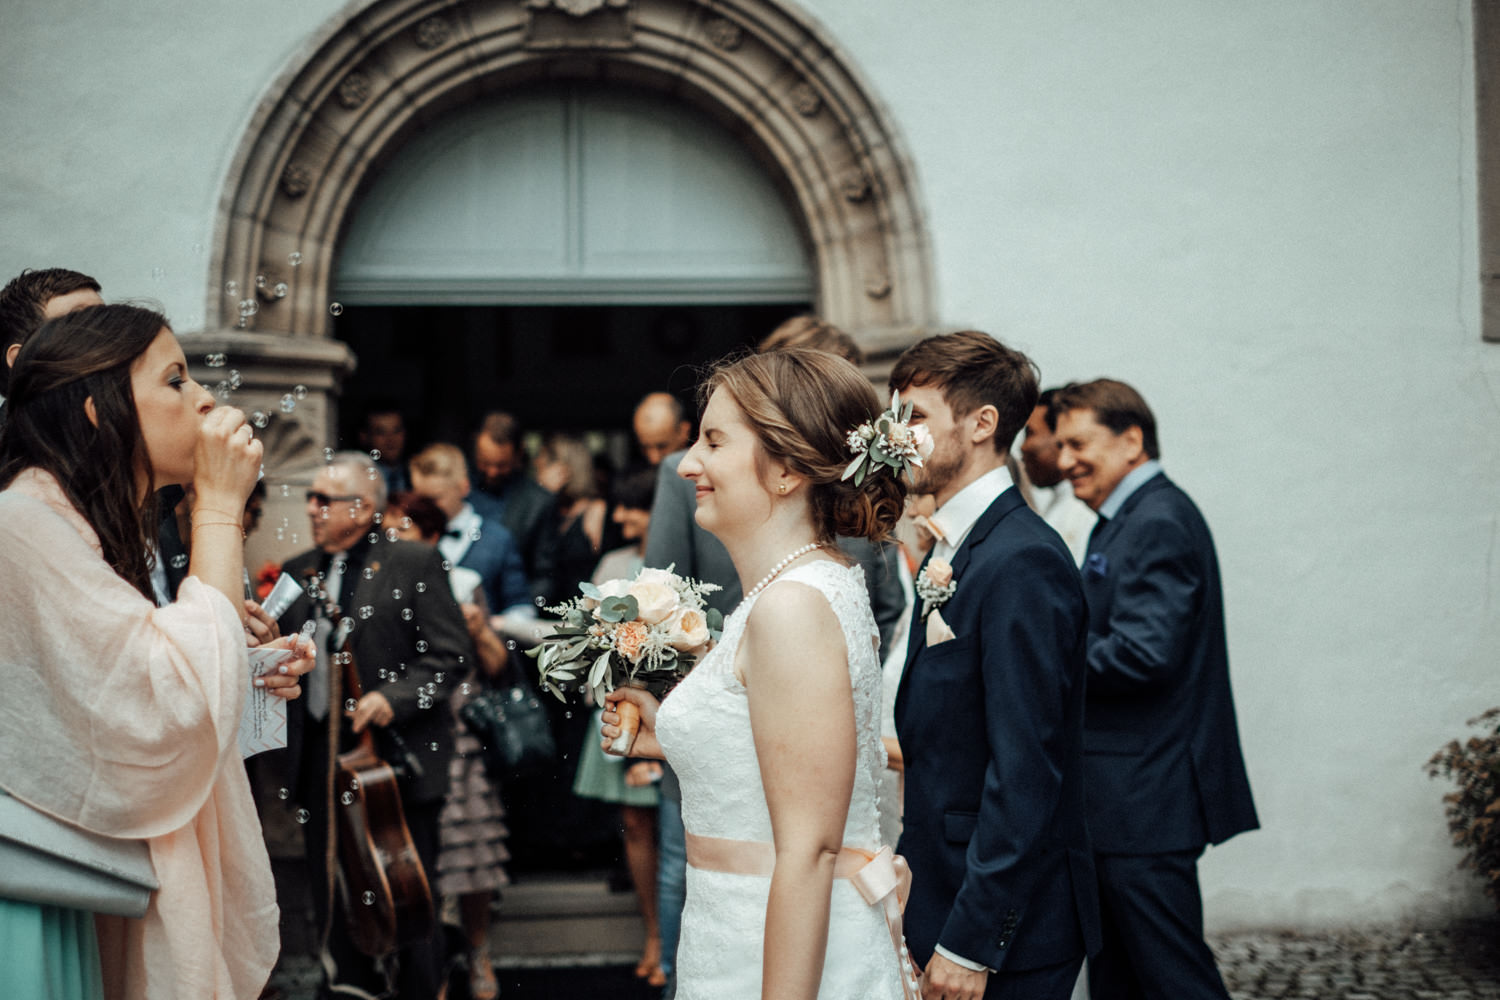 Zelthochzeit-Inspiration-Hochzeitsreportage-natürlich-Hessenhof-Coburg-Oberfranken-Aachen-Hochzeitsfotograf-Kevin Biberbach-KEVIN Fotografie-Junebug-Hochzeitswahn-062.jpg